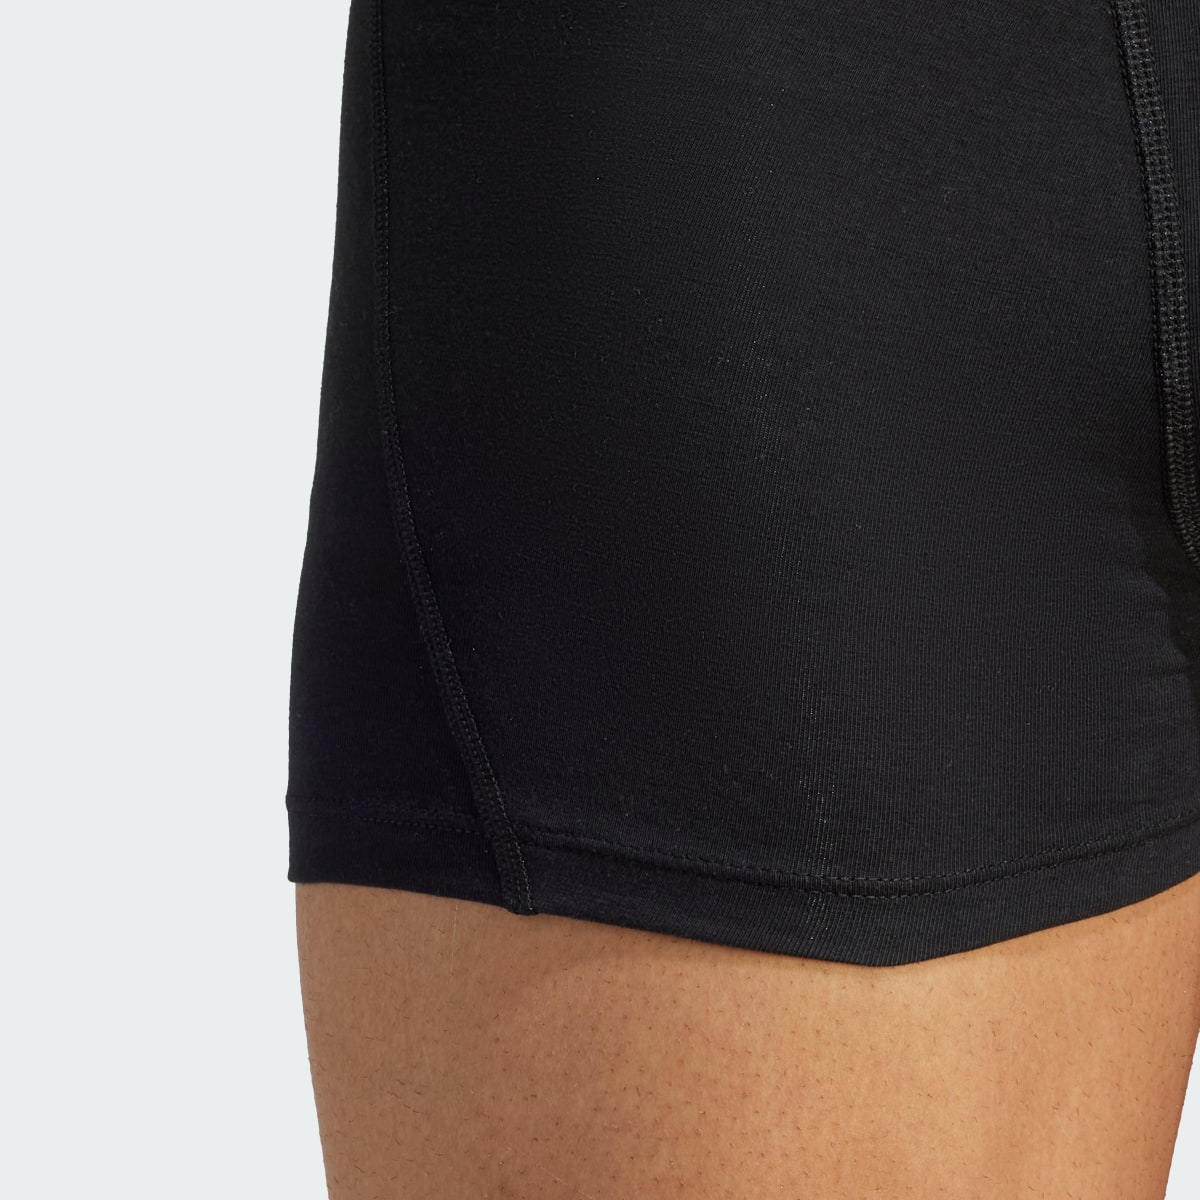 Adidas Active Flex Cotton Trunk Underwear (3 Pack). 8